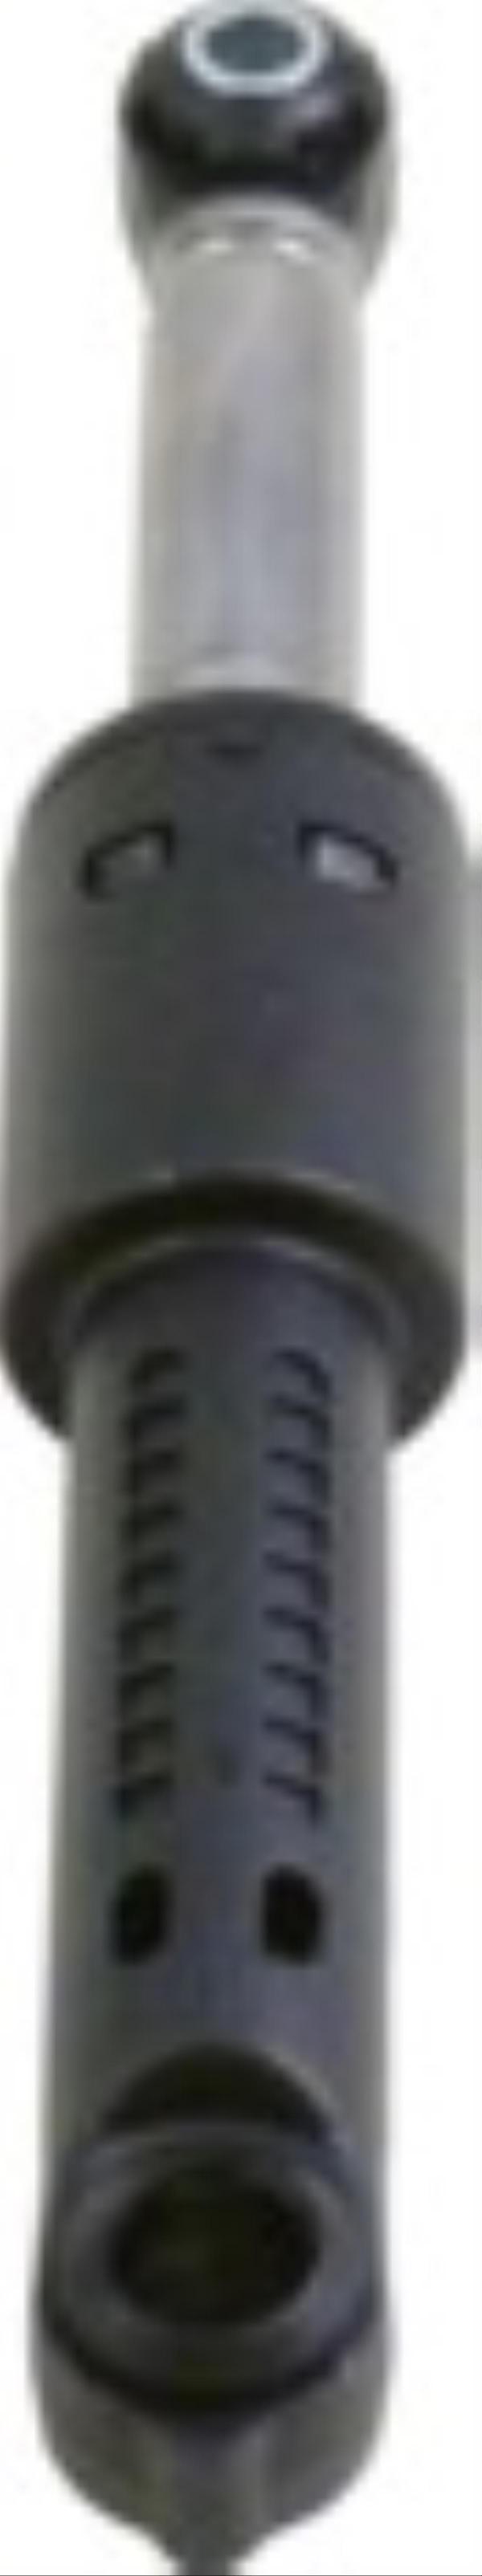 Амортизатор бака для стиральной машины Bosch (Бош), Siemens (Сименс) 90N